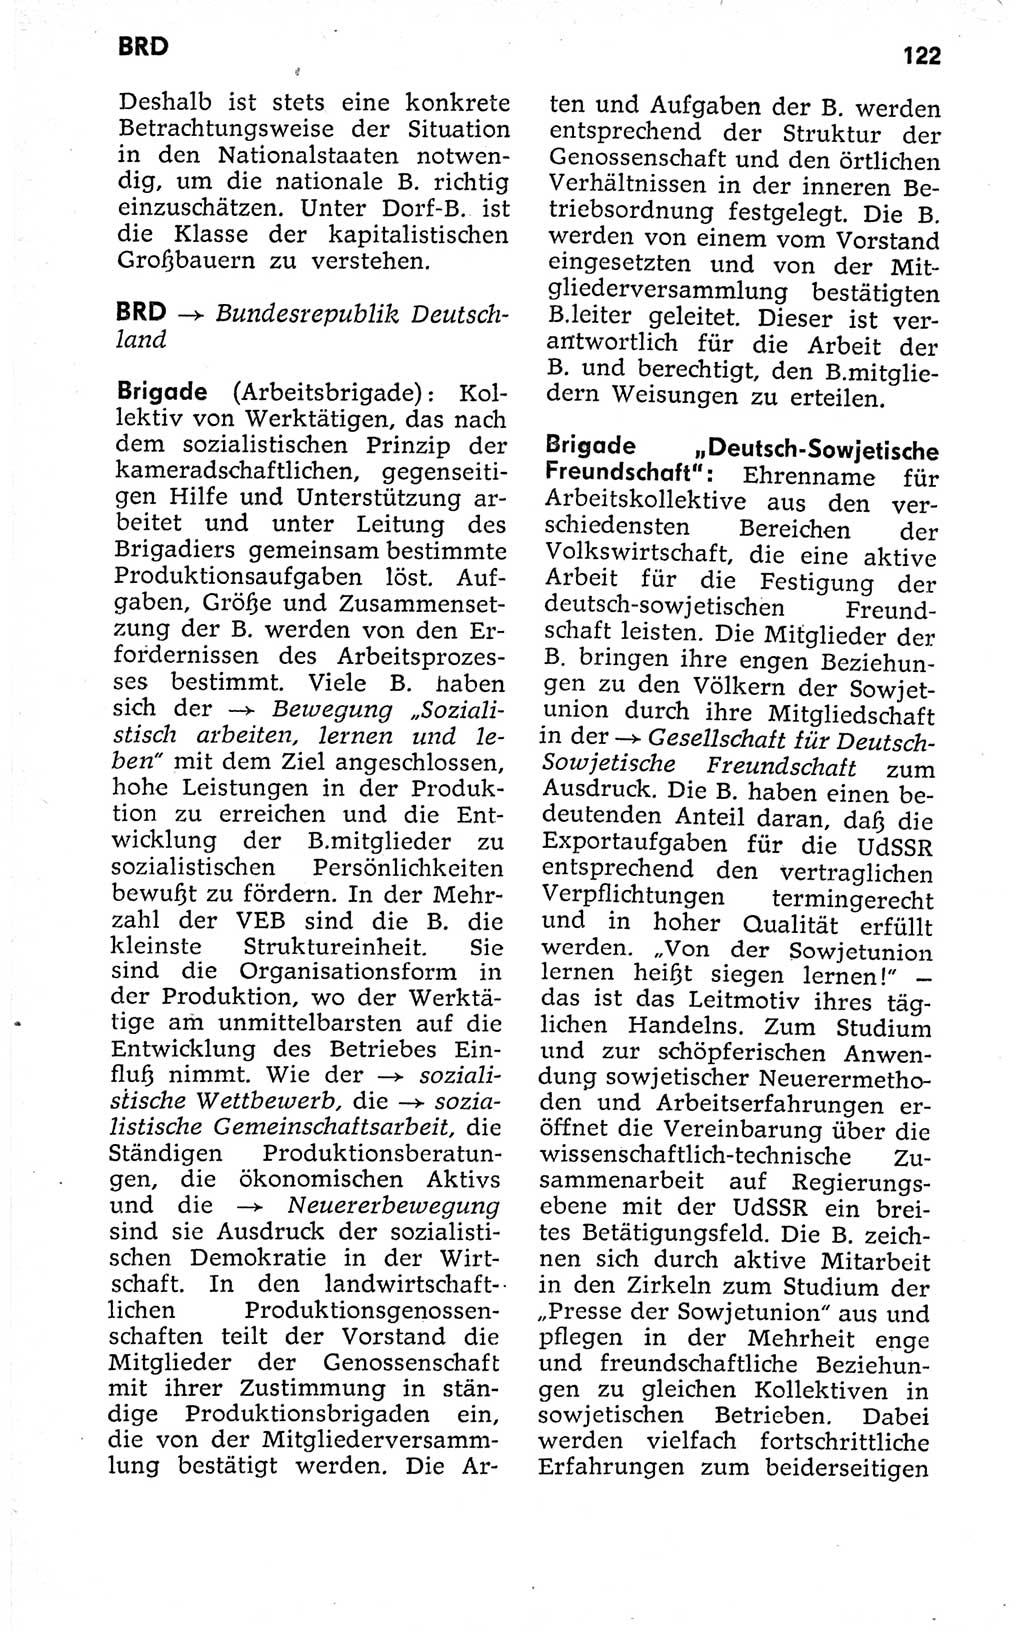 Kleines politisches Wörterbuch [Deutsche Demokratische Republik (DDR)] 1973, Seite 122 (Kl. pol. Wb. DDR 1973, S. 122)